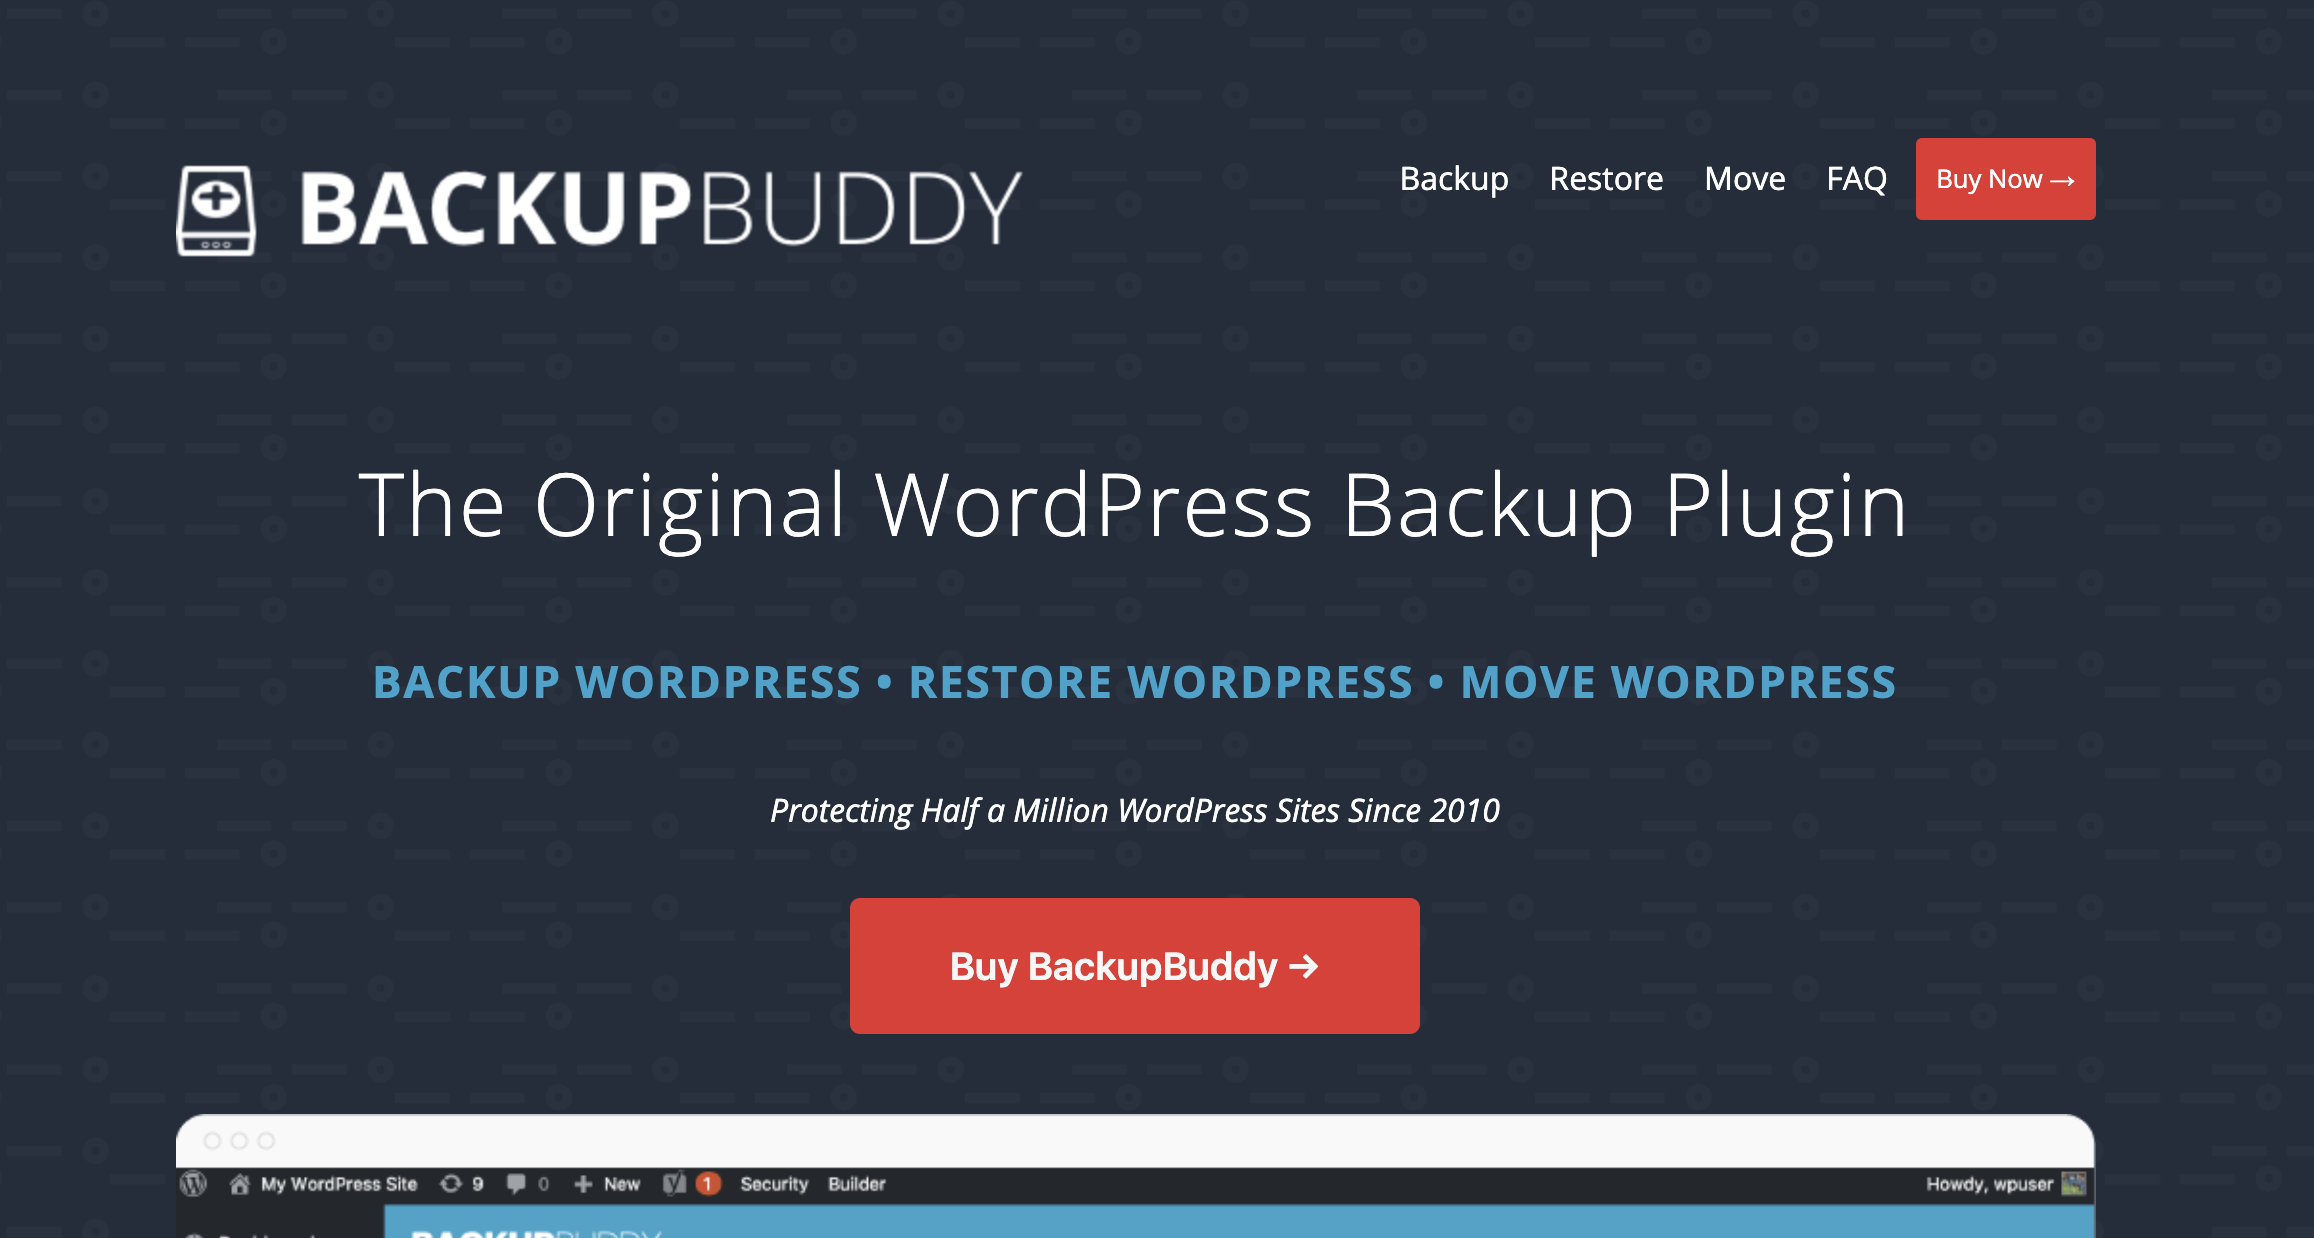 wordpress backup buddy download